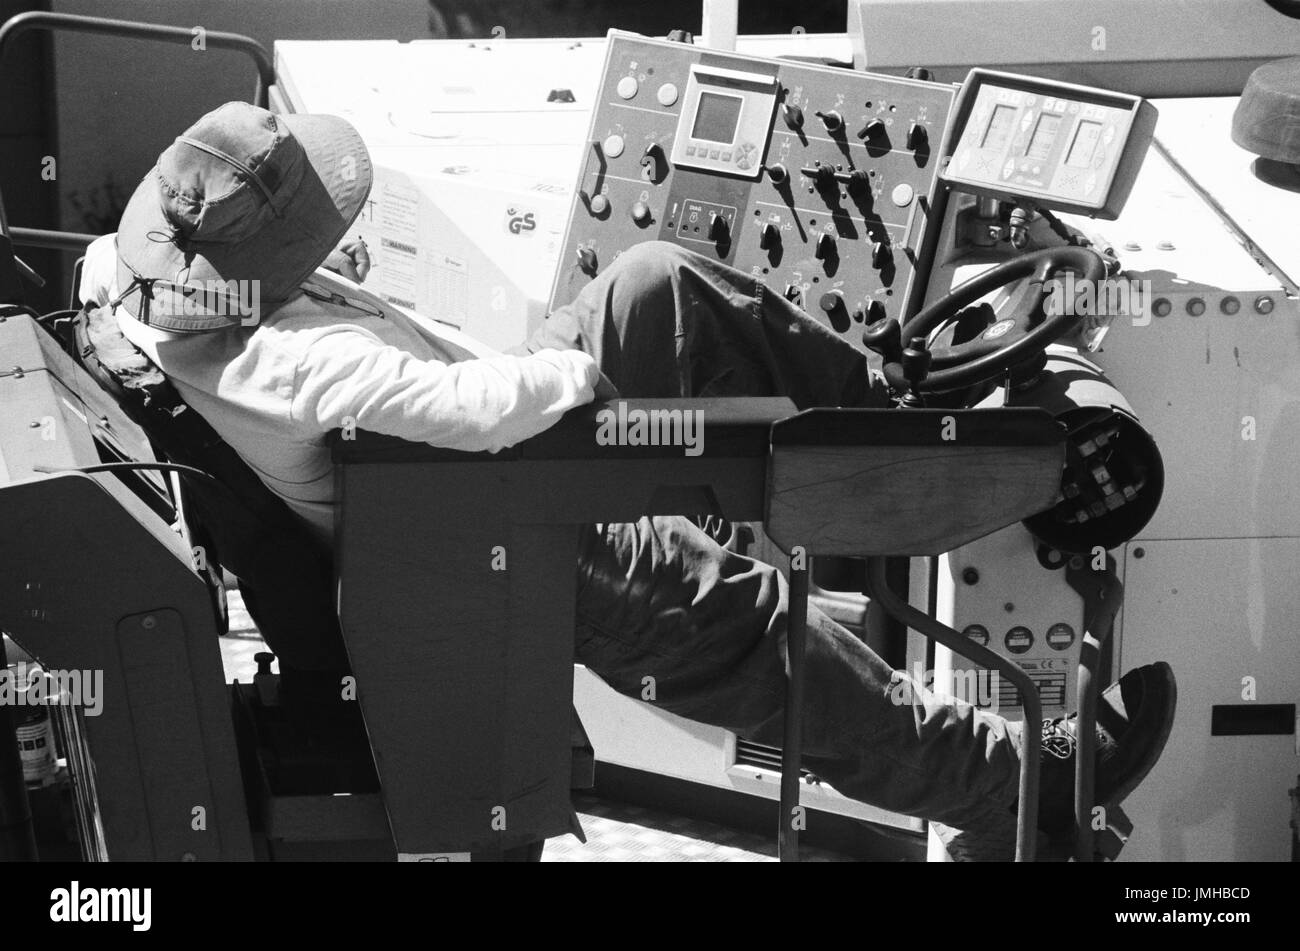 Un travailleur de la construction pour les salons d'asphalte américain sur son matériel en attendant que les autres travailleurs d'accomplir leurs tâches, au cours d'un projet de revêtement routier et de construction dans la région de la baie de San Francisco suburb de San Ramon, Californie, le 26 juin 2017. Banque D'Images